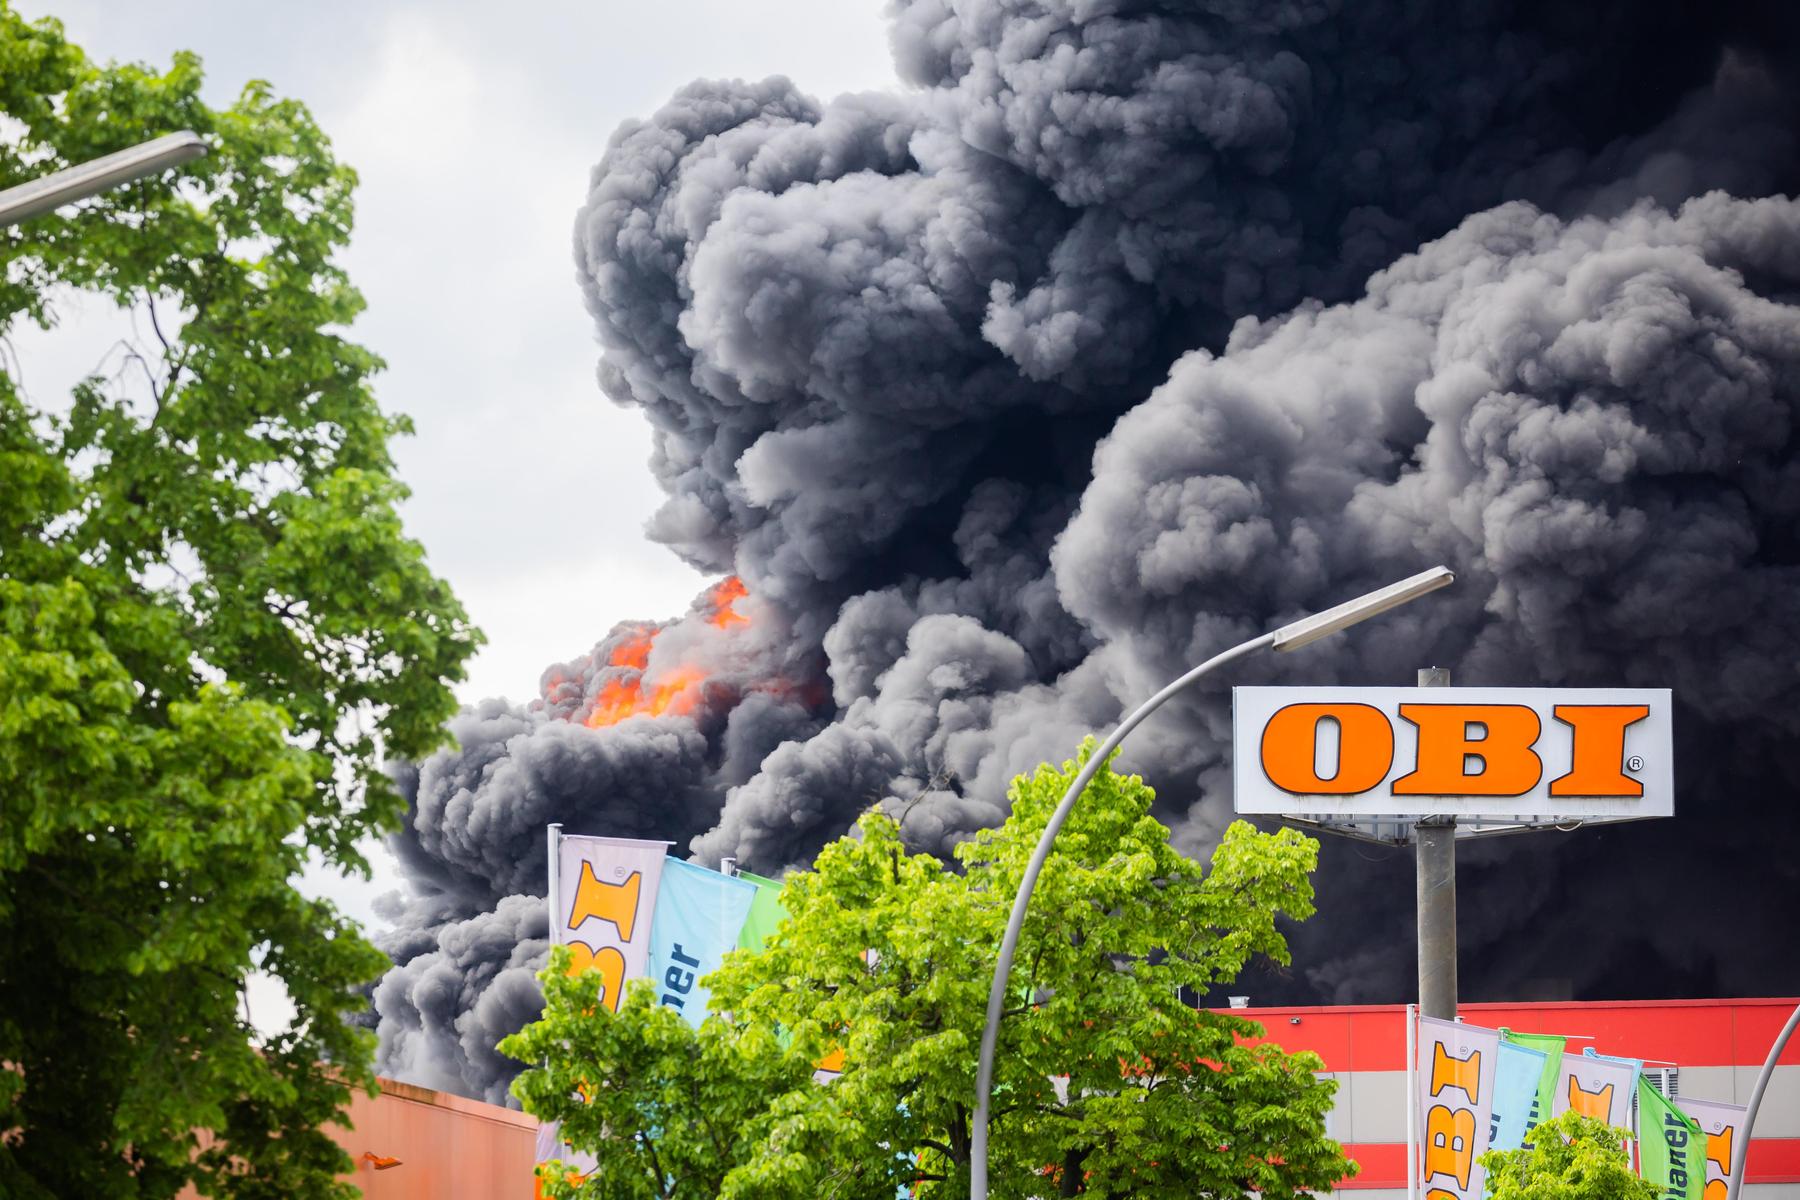 liefert luftabwehr an ukraine: großbrand bei waffenhersteller: giftige rauchwolke zieht über berlin